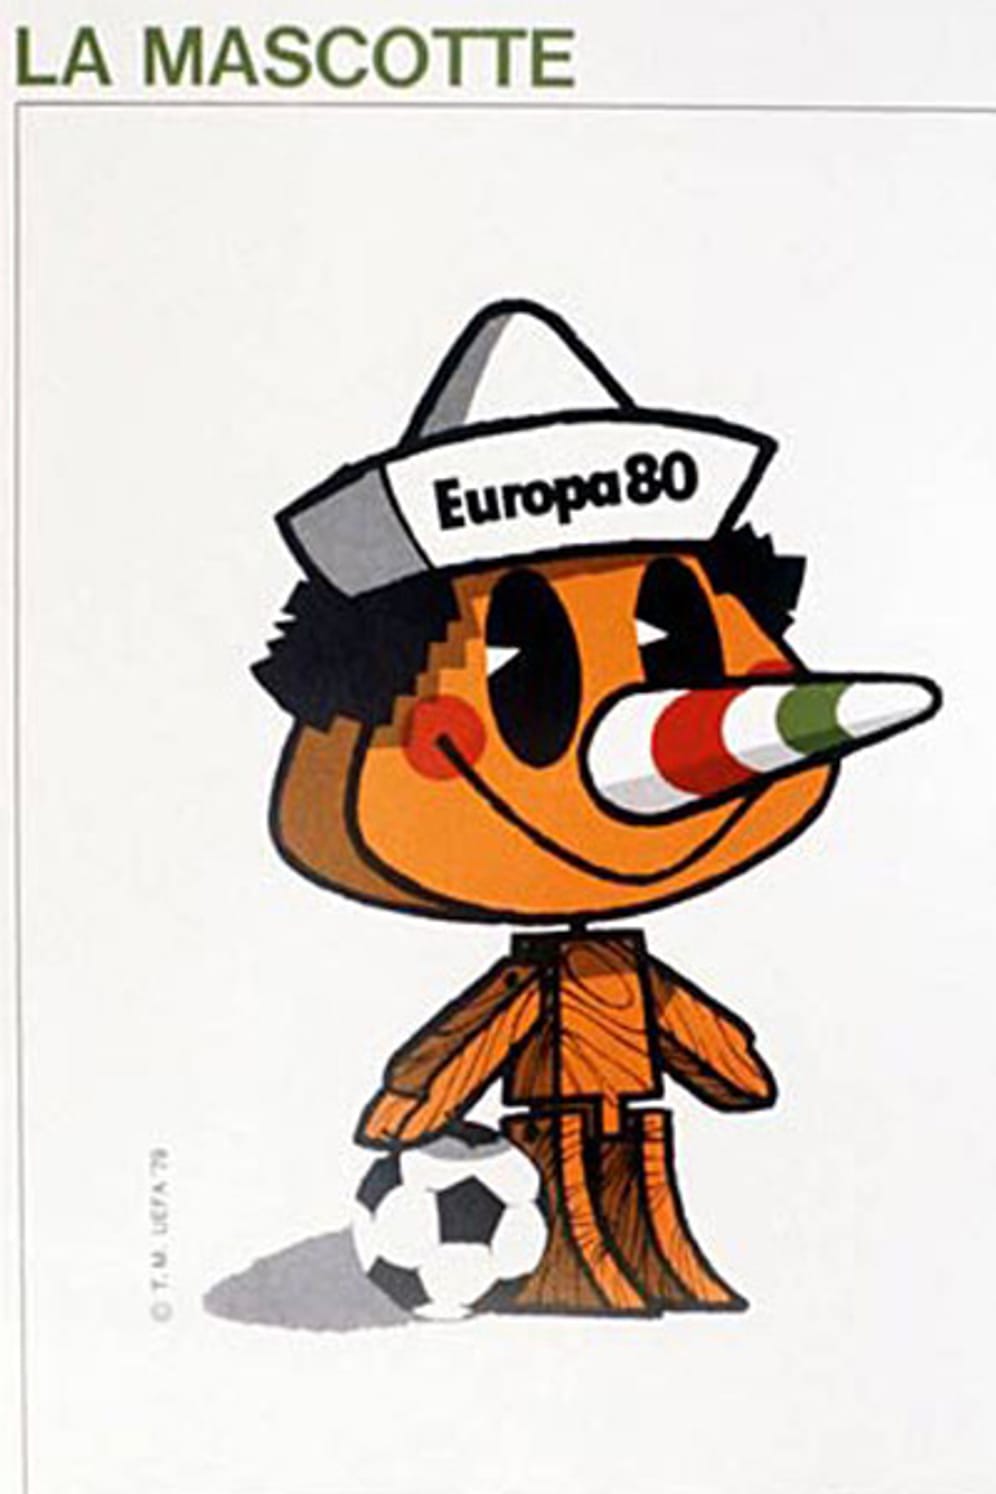 Mit Pinocchio erhielt 1980 erstmals auch eine Fußball-Europameisterschaft ein Maskottchen. Mit einem breiten Grinsen, großen Augen und einem Fußball unter dem rechten Arm kam der Junge aus der Erzählung von Carlo Collodis daher. An das Gastgeberland Italien erinnerte nur die in den Nationalfarben gestreifte Nase des kleinen hölzernen Freundes.